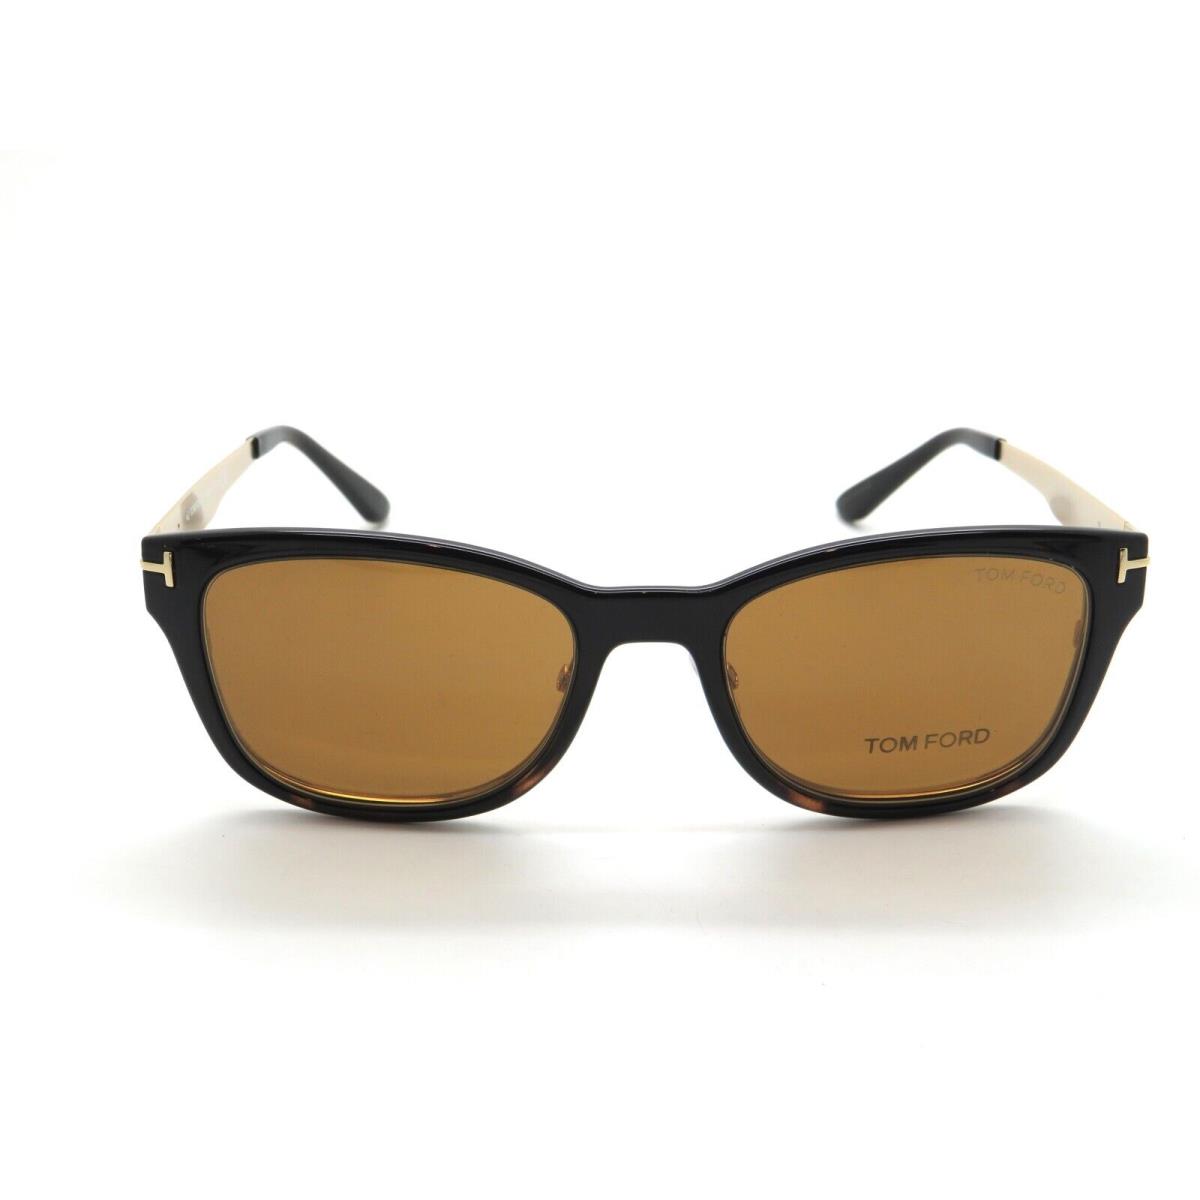 Tom Ford eyeglasses  - Shiny Gold Frame 3